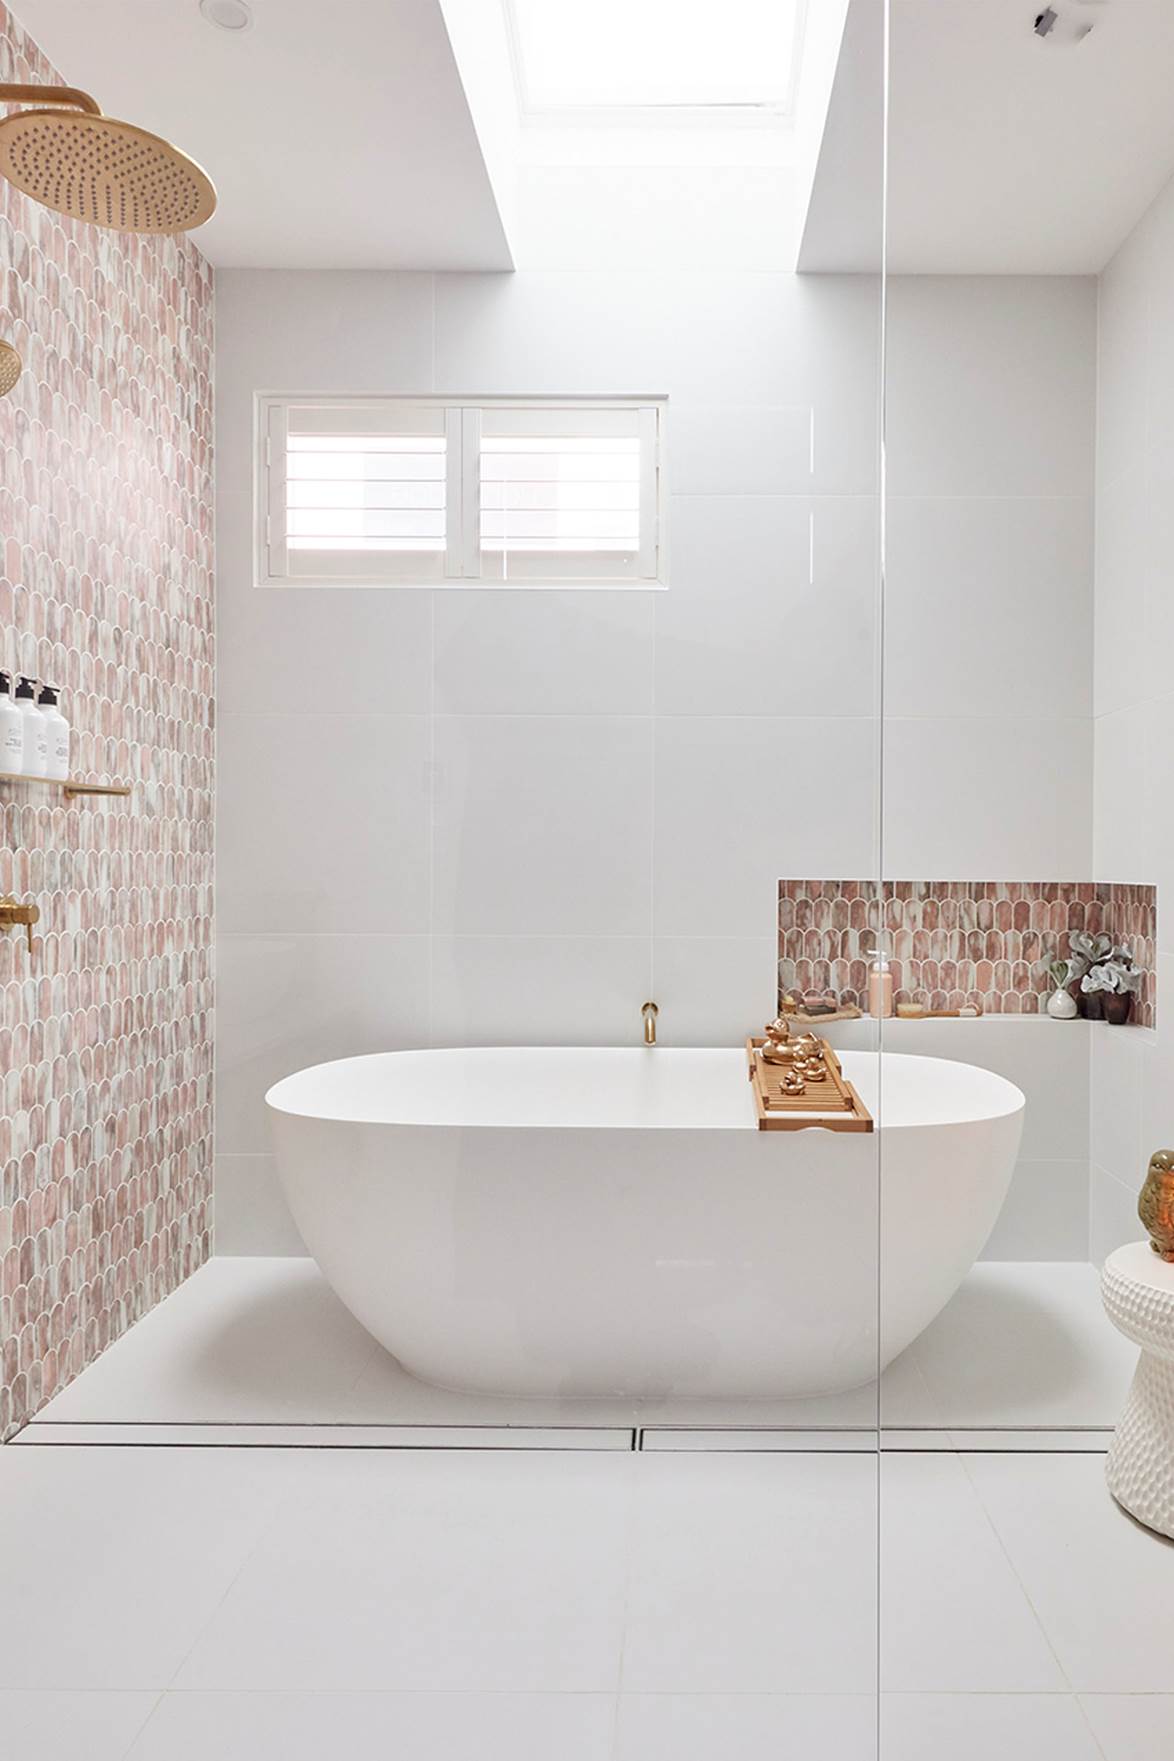 Tha hồ gom nhặt ý tưởng cho căn phòng tắm gia đình với những thiết kế đẹp miễn chê - Ảnh 1.